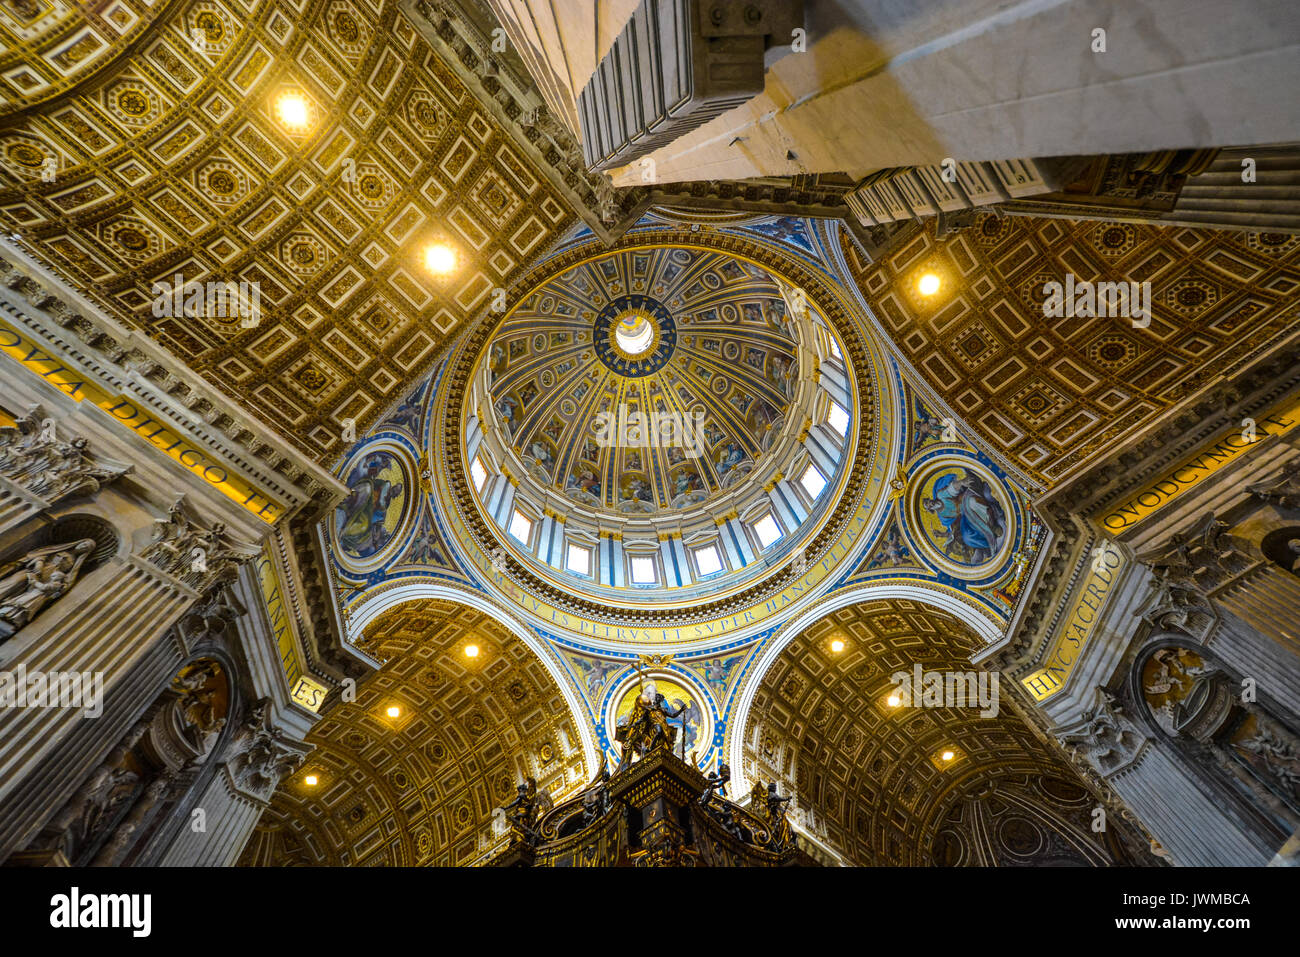 La coupole de la Basilique St Pierre dans la Cité du Vatican, Rome, Italie à partir de l'intérieur montrant les couleurs bleu et or brillant Banque D'Images